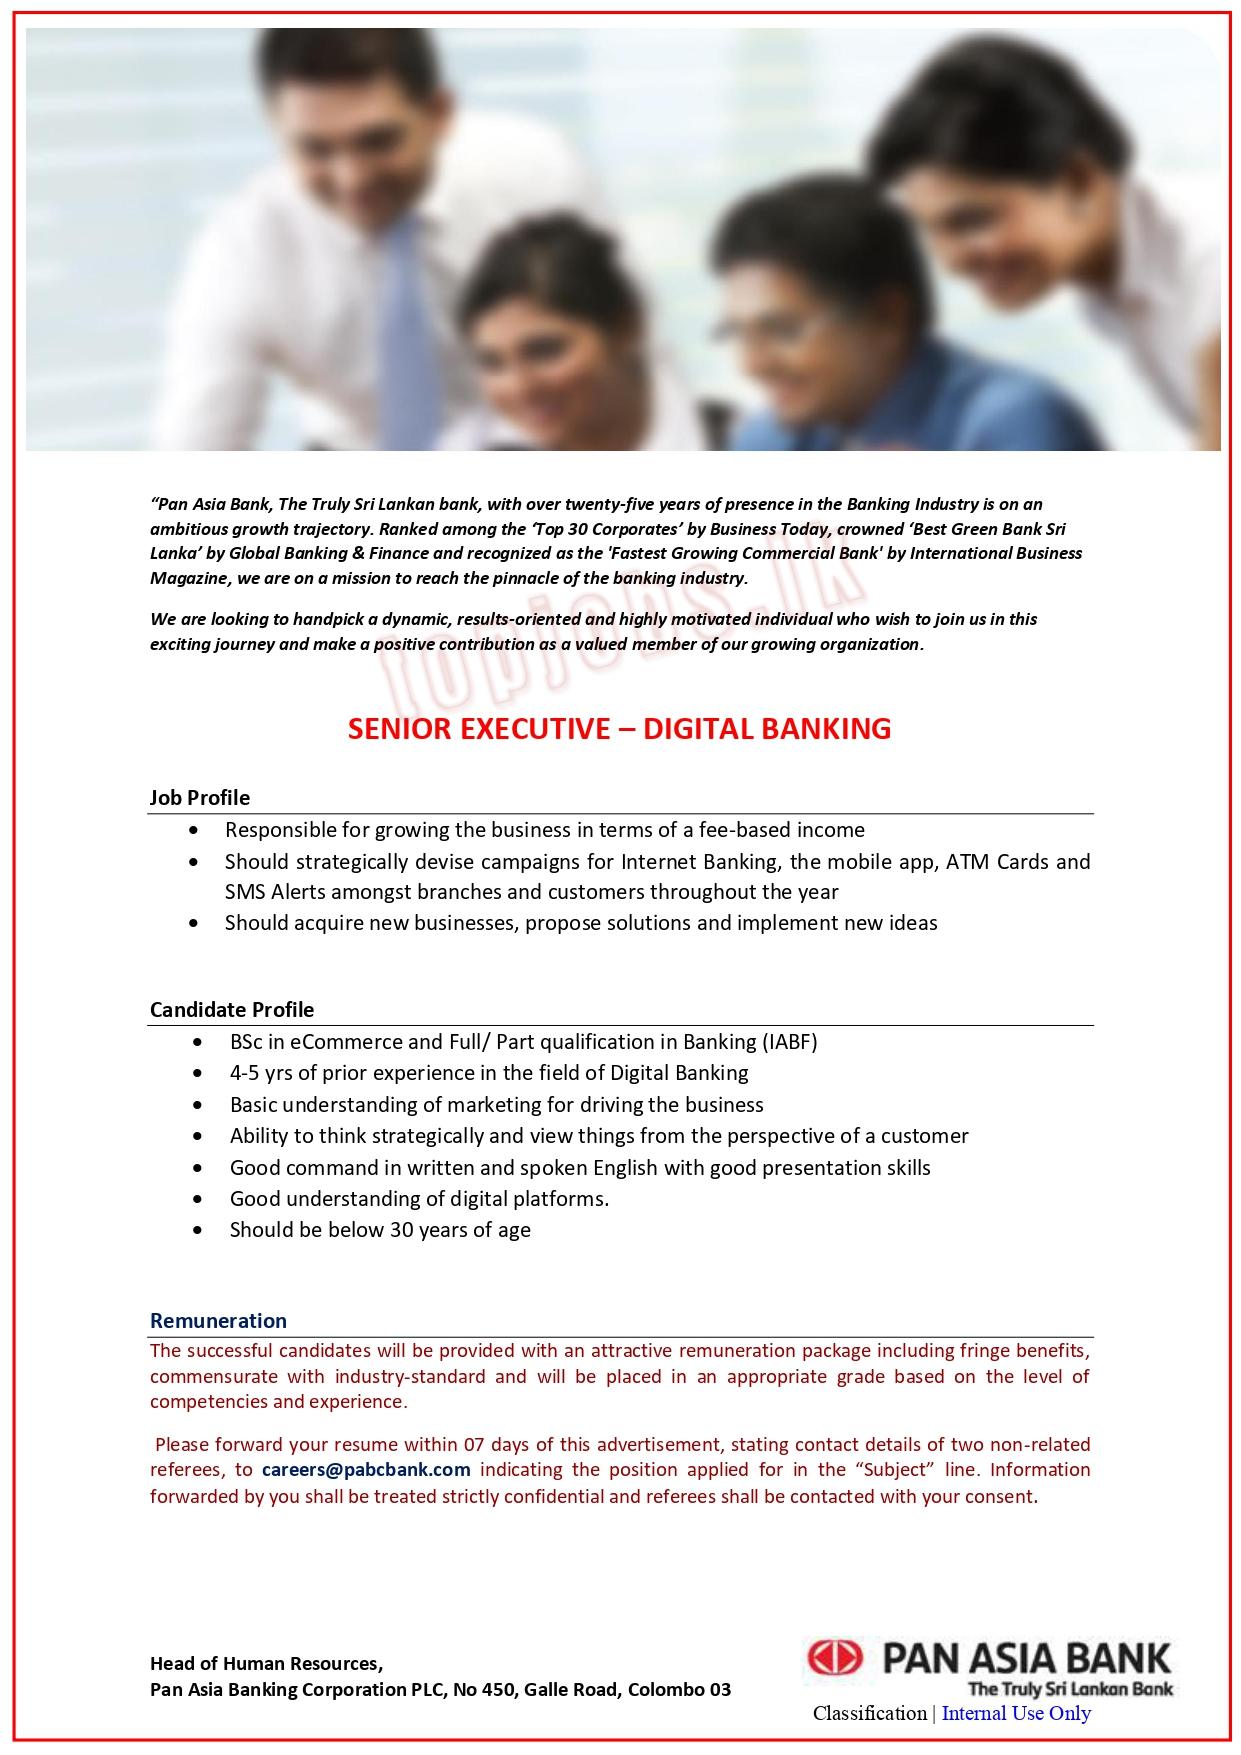 Senior Executive of Digital Banking Vacancy - Pan Asia Bank Jobs Vacancies